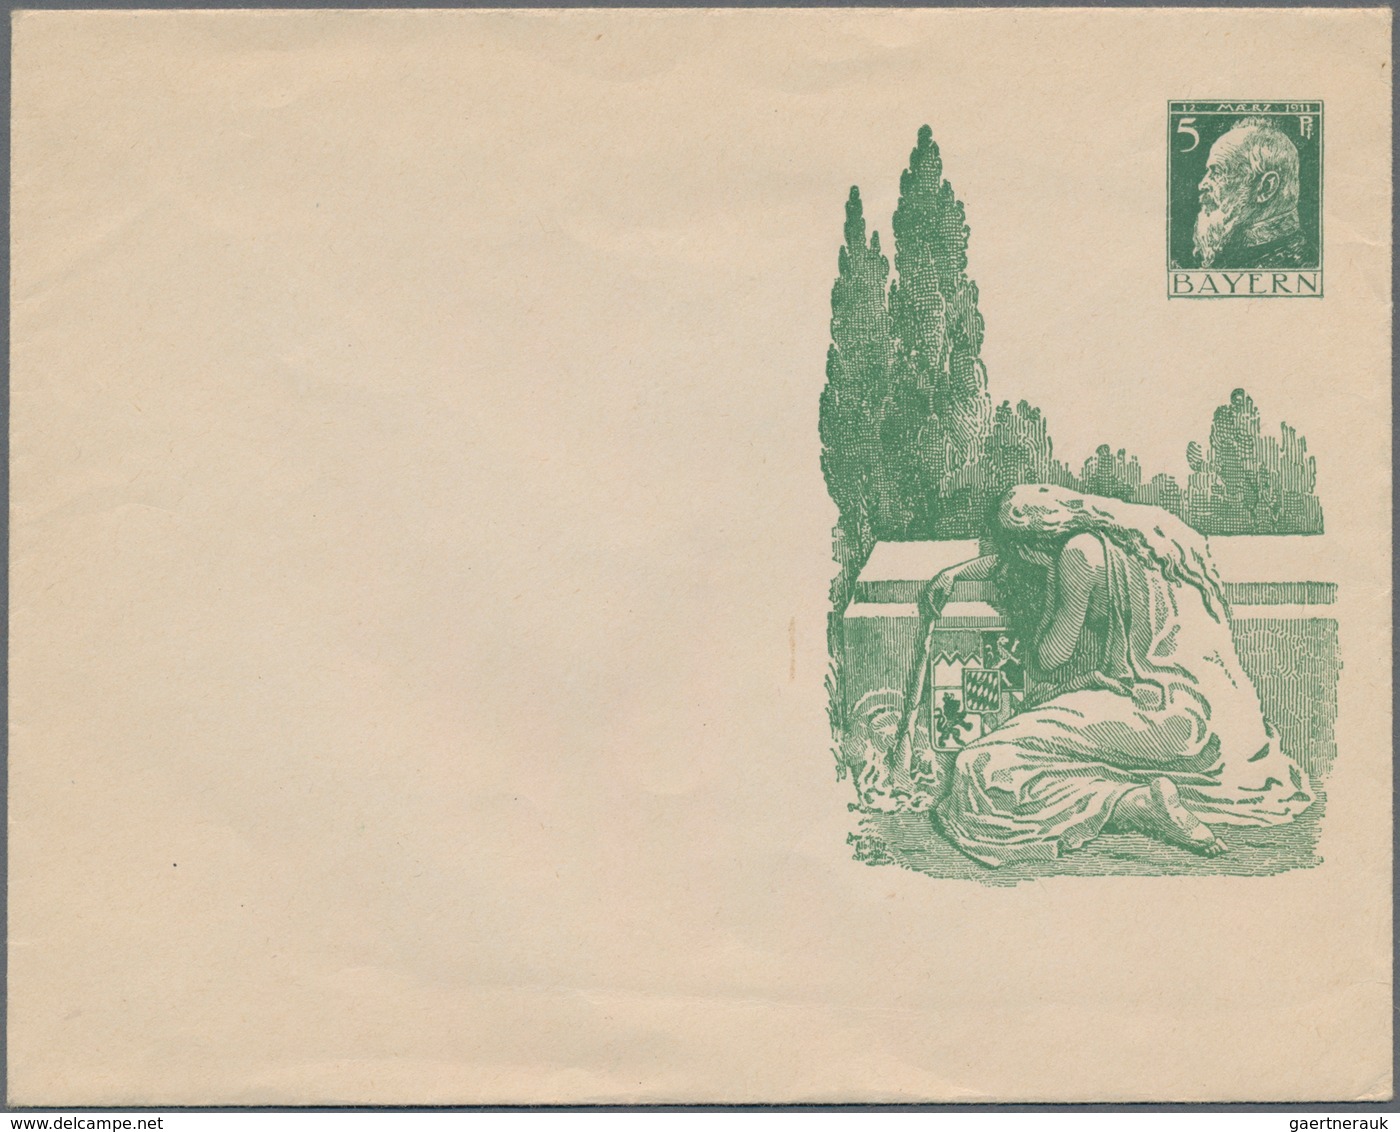 Deutschland: 1880 - 1960 (ca.), Posten von über 400 Belegen, dabei Ganzsachen, Bildpostkarten, FDC,